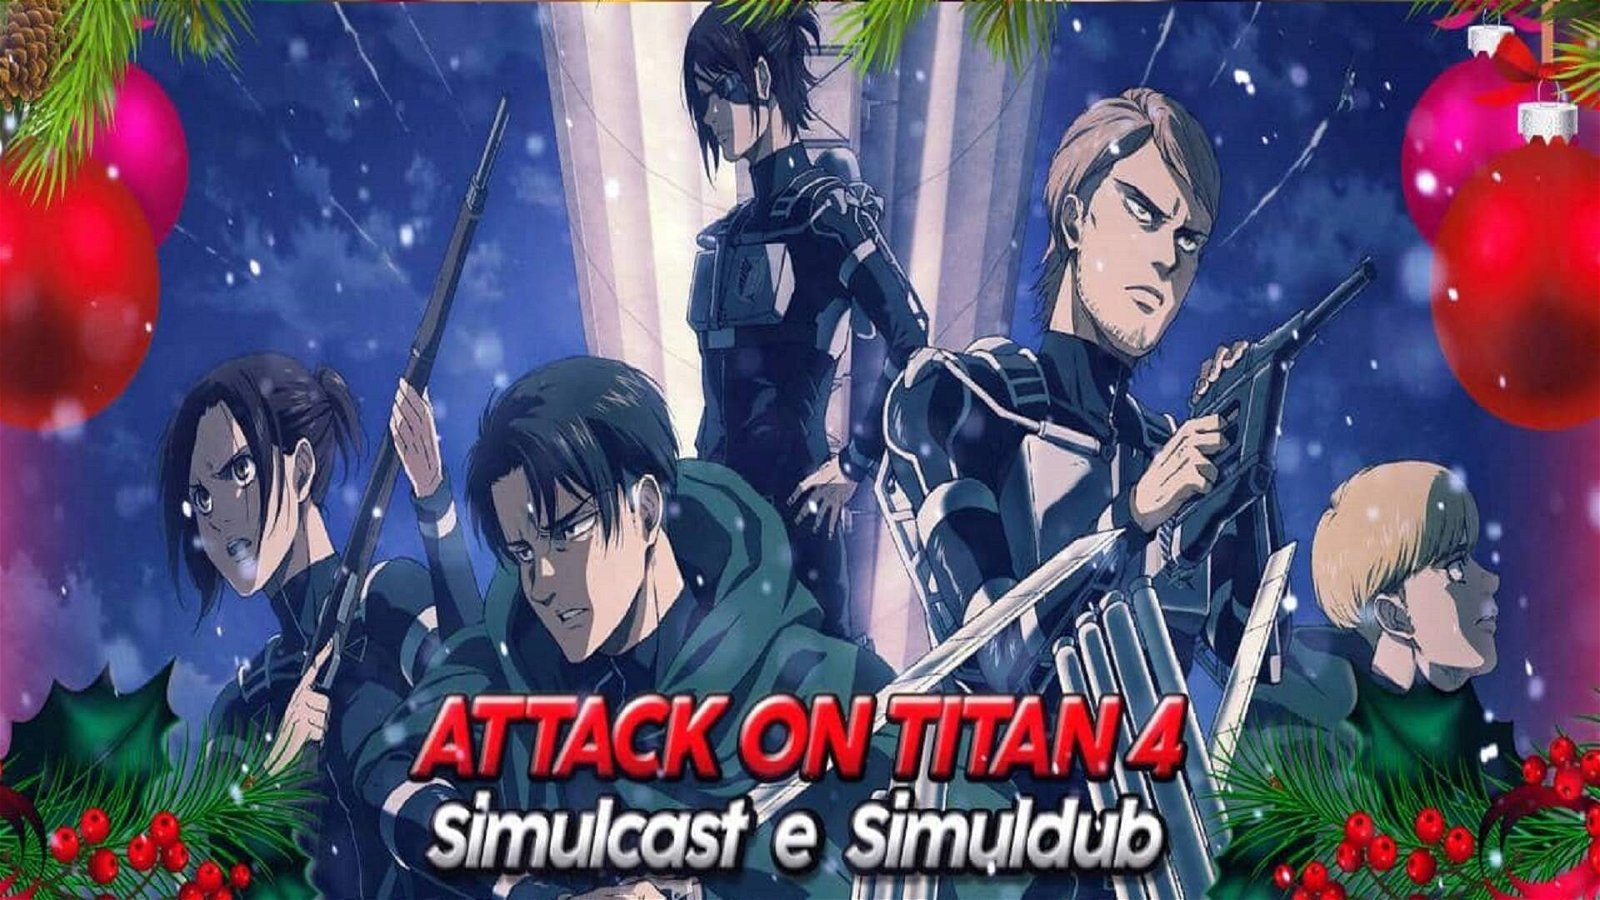 Immagine di L'attacco dei Giganti 4 su VVVVID e Amazon Prime Video anche in italiano